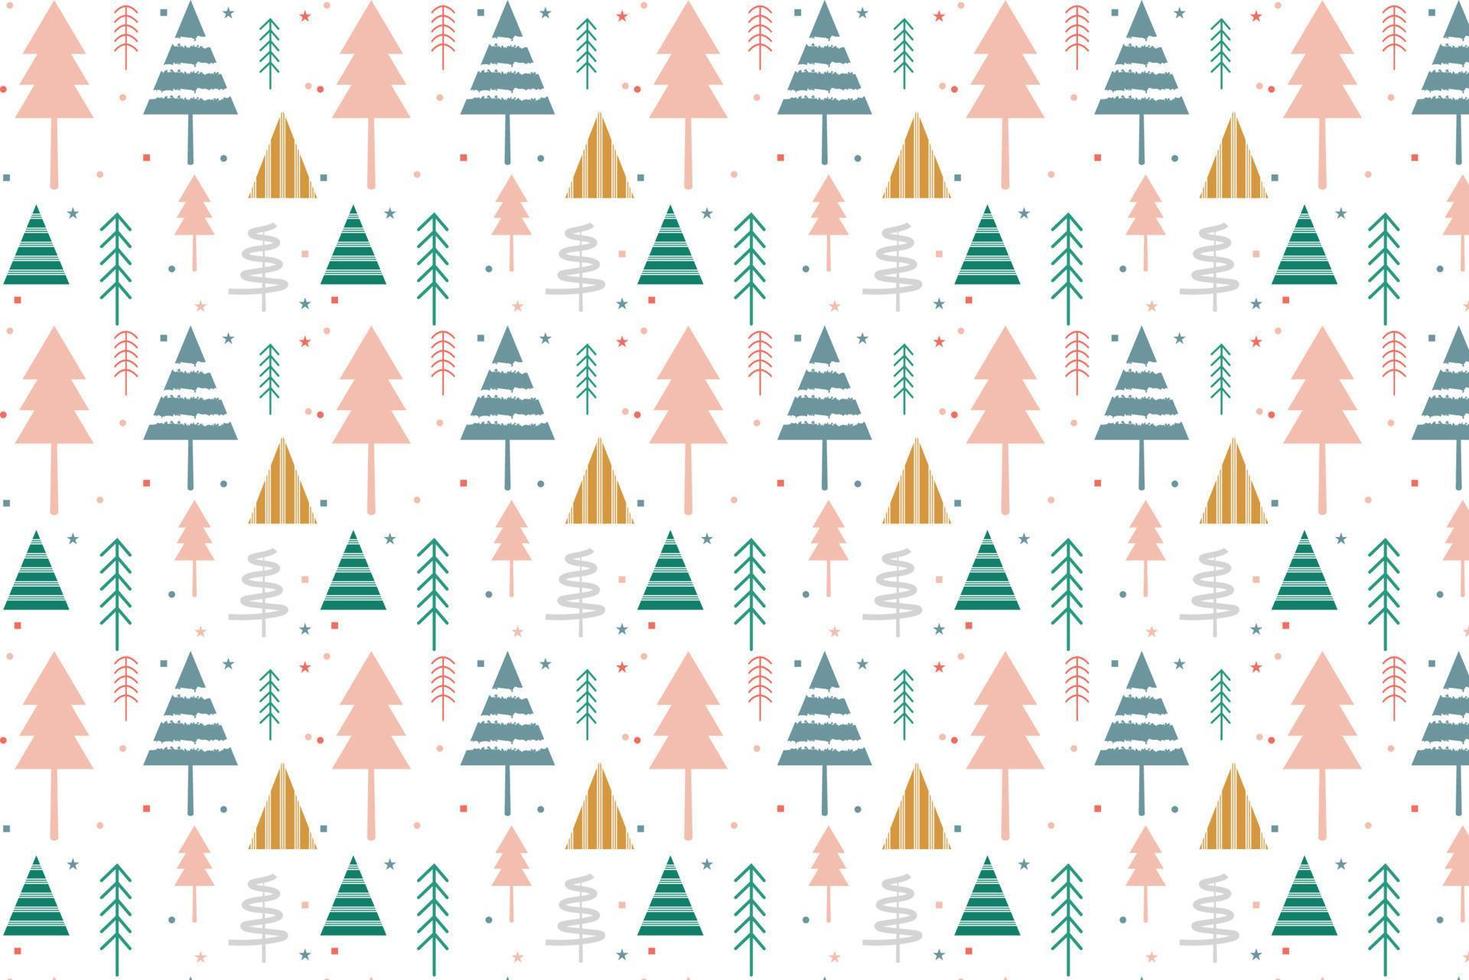 gemakkelijk Kerstmis naadloos patroon met meetkundig motieven. sneeuwvlokken en cirkels met verschillend ornamenten. magie natuur fantasie sneeuwval structuur decoratie ontwerp vector